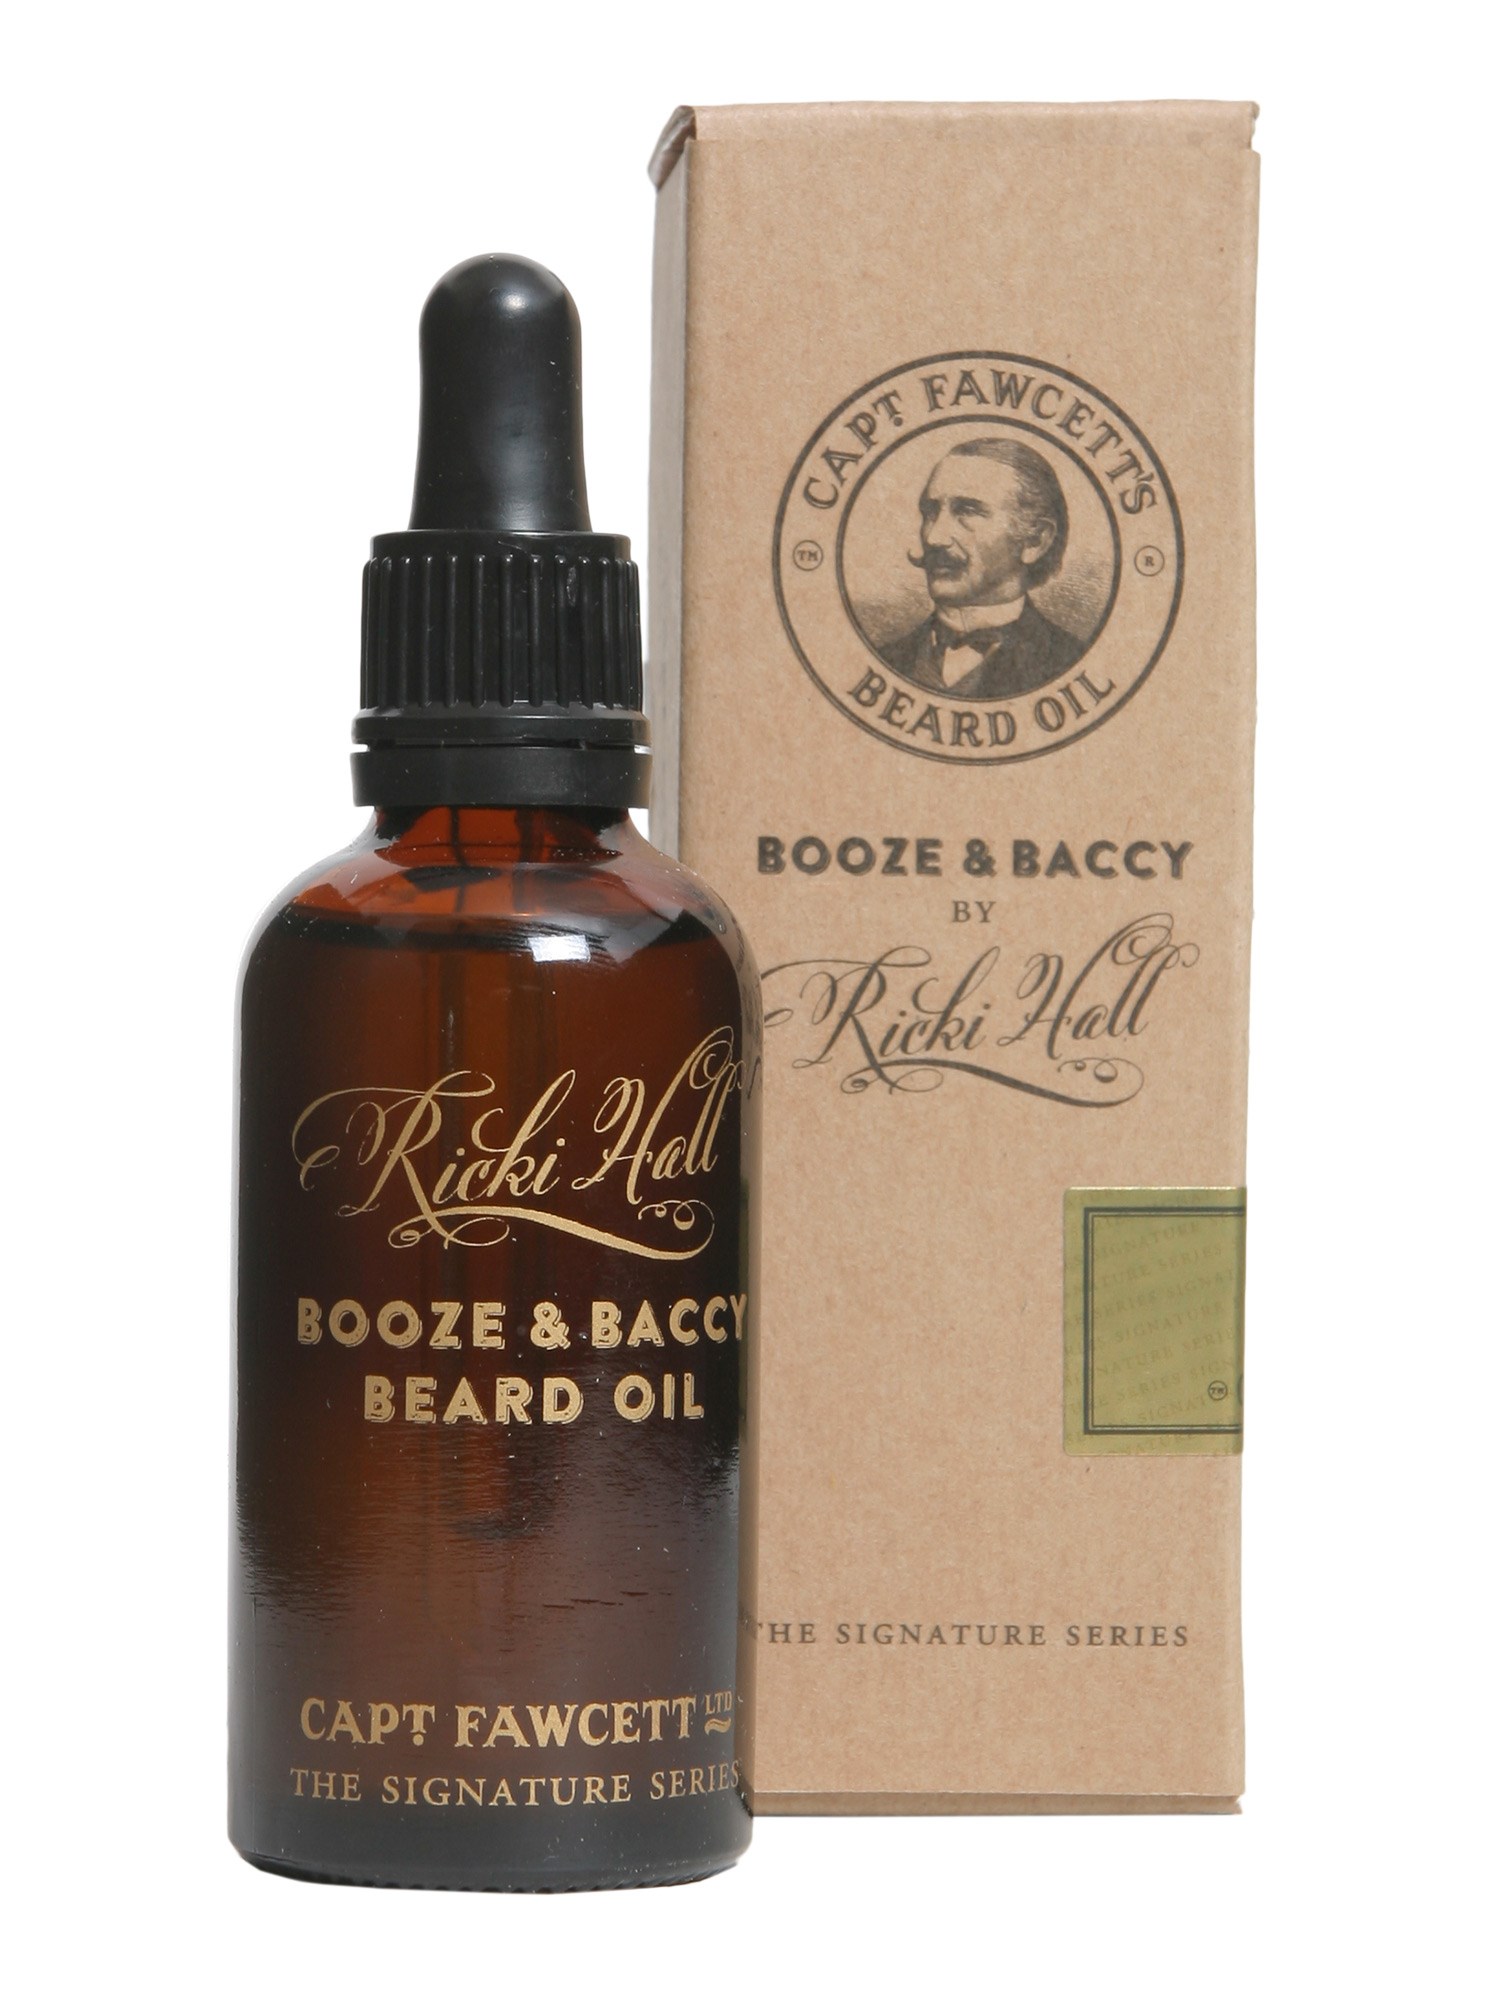 captain fawcett booze & baccy beard oil